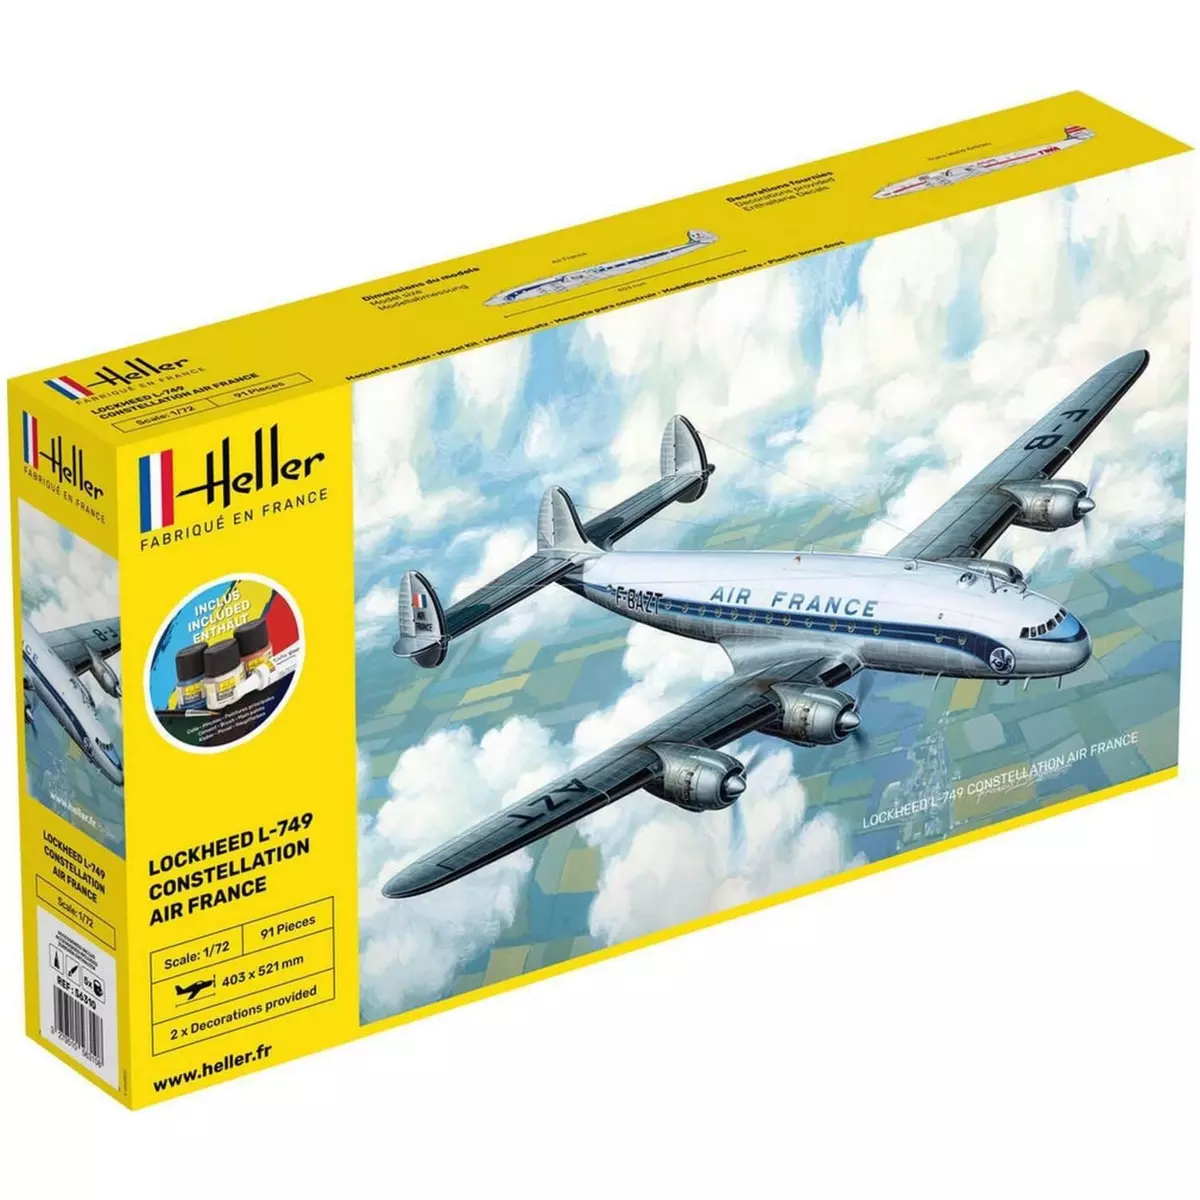 Heller Maquette avion : Starter Kit : L-749 Constellation AF